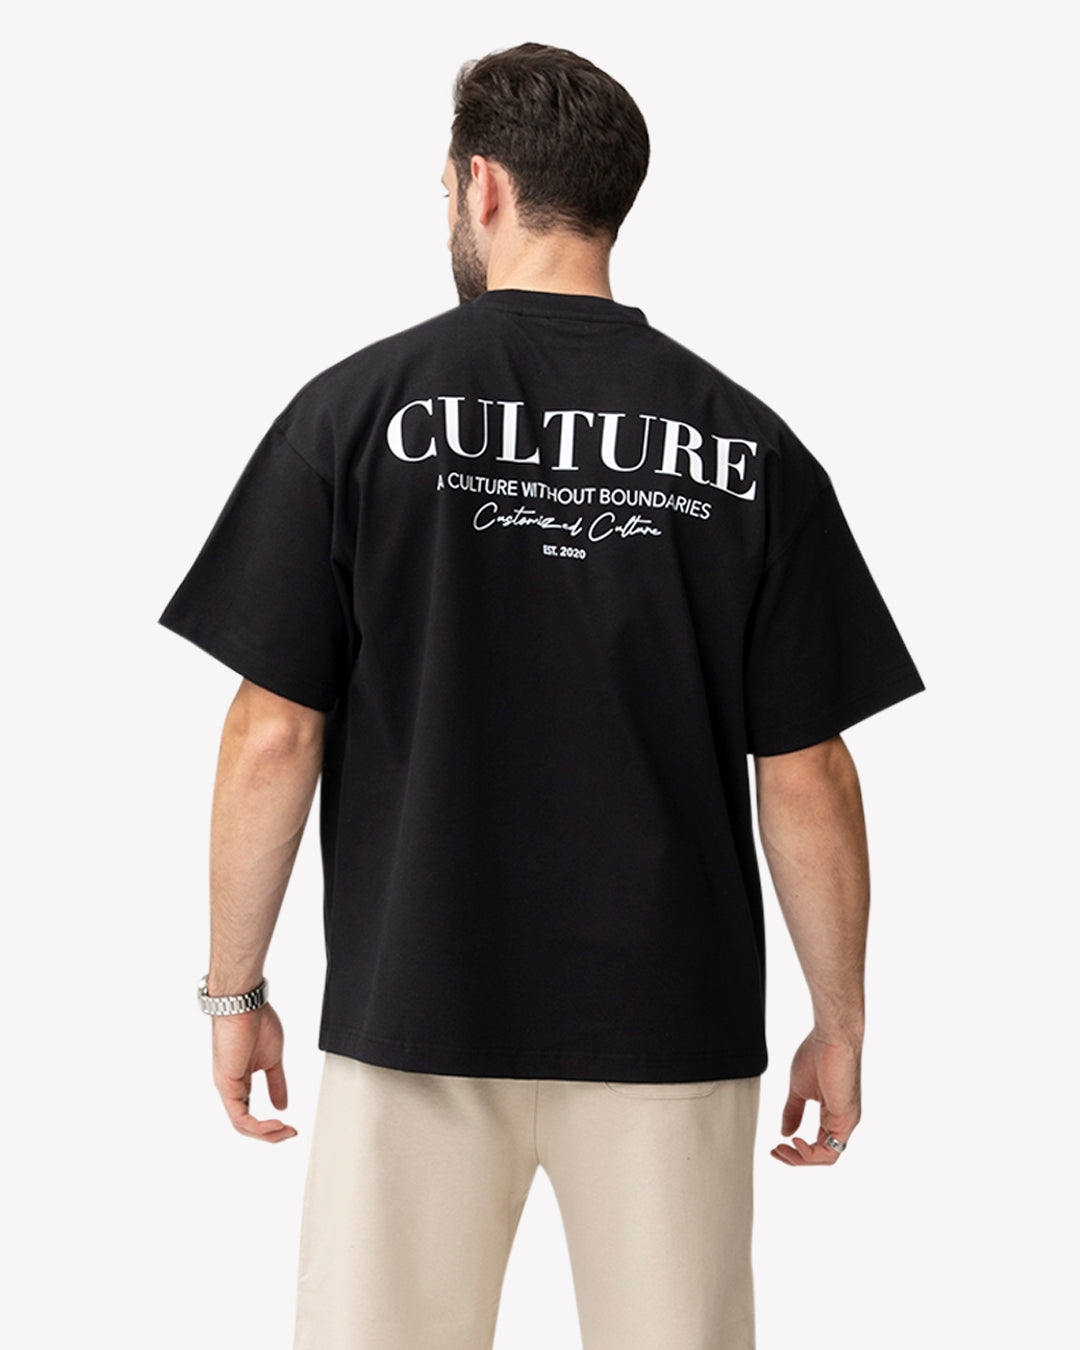 Culture T-Shirt Black | Customized Culture